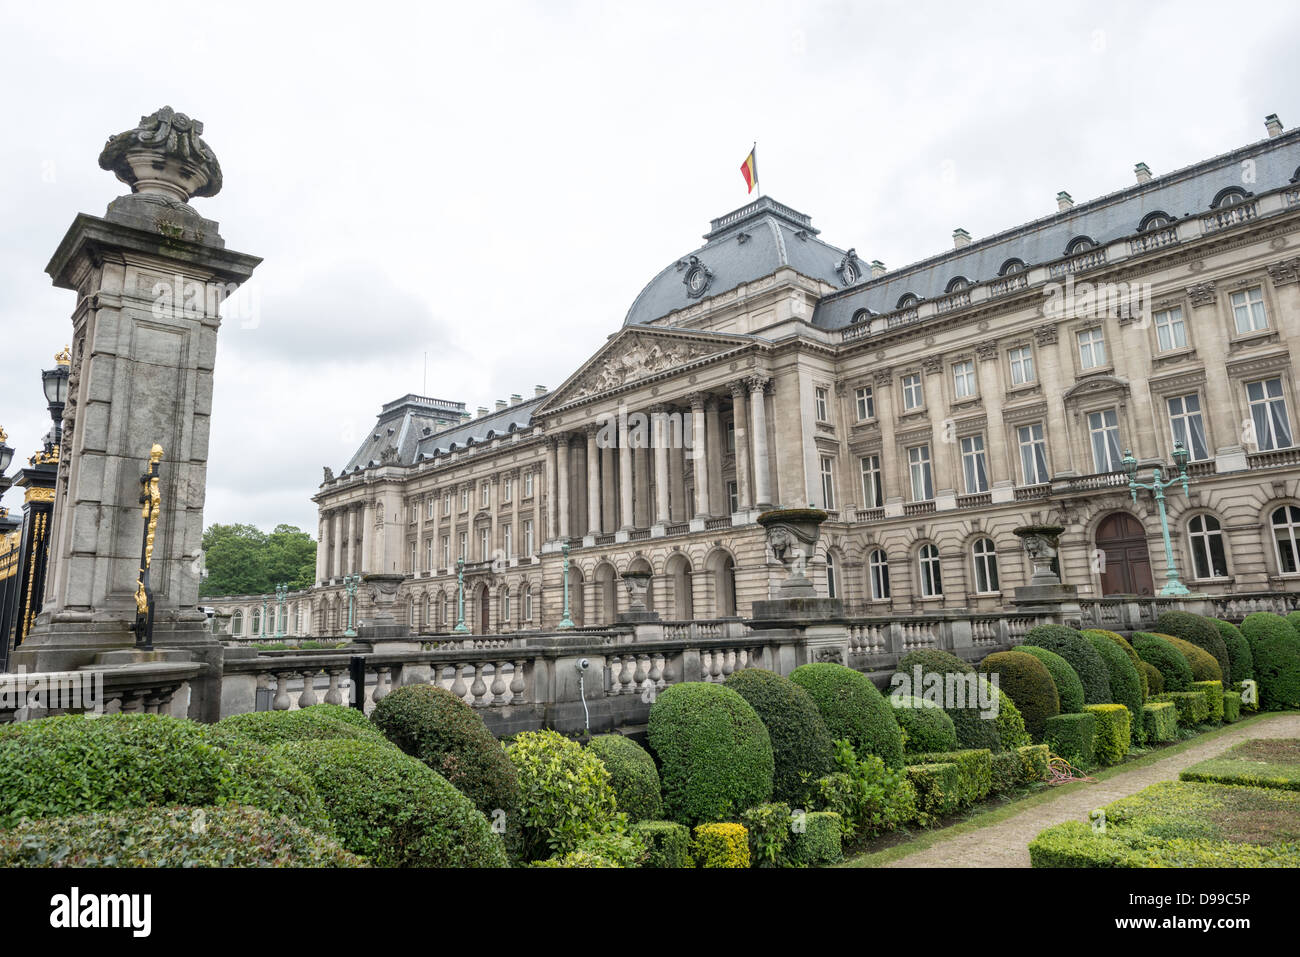 Bruxelles, Belgique - l'avant du bâtiment principal du Palais Royal de Bruxelles, le palais de la famille royale belge. Banque D'Images